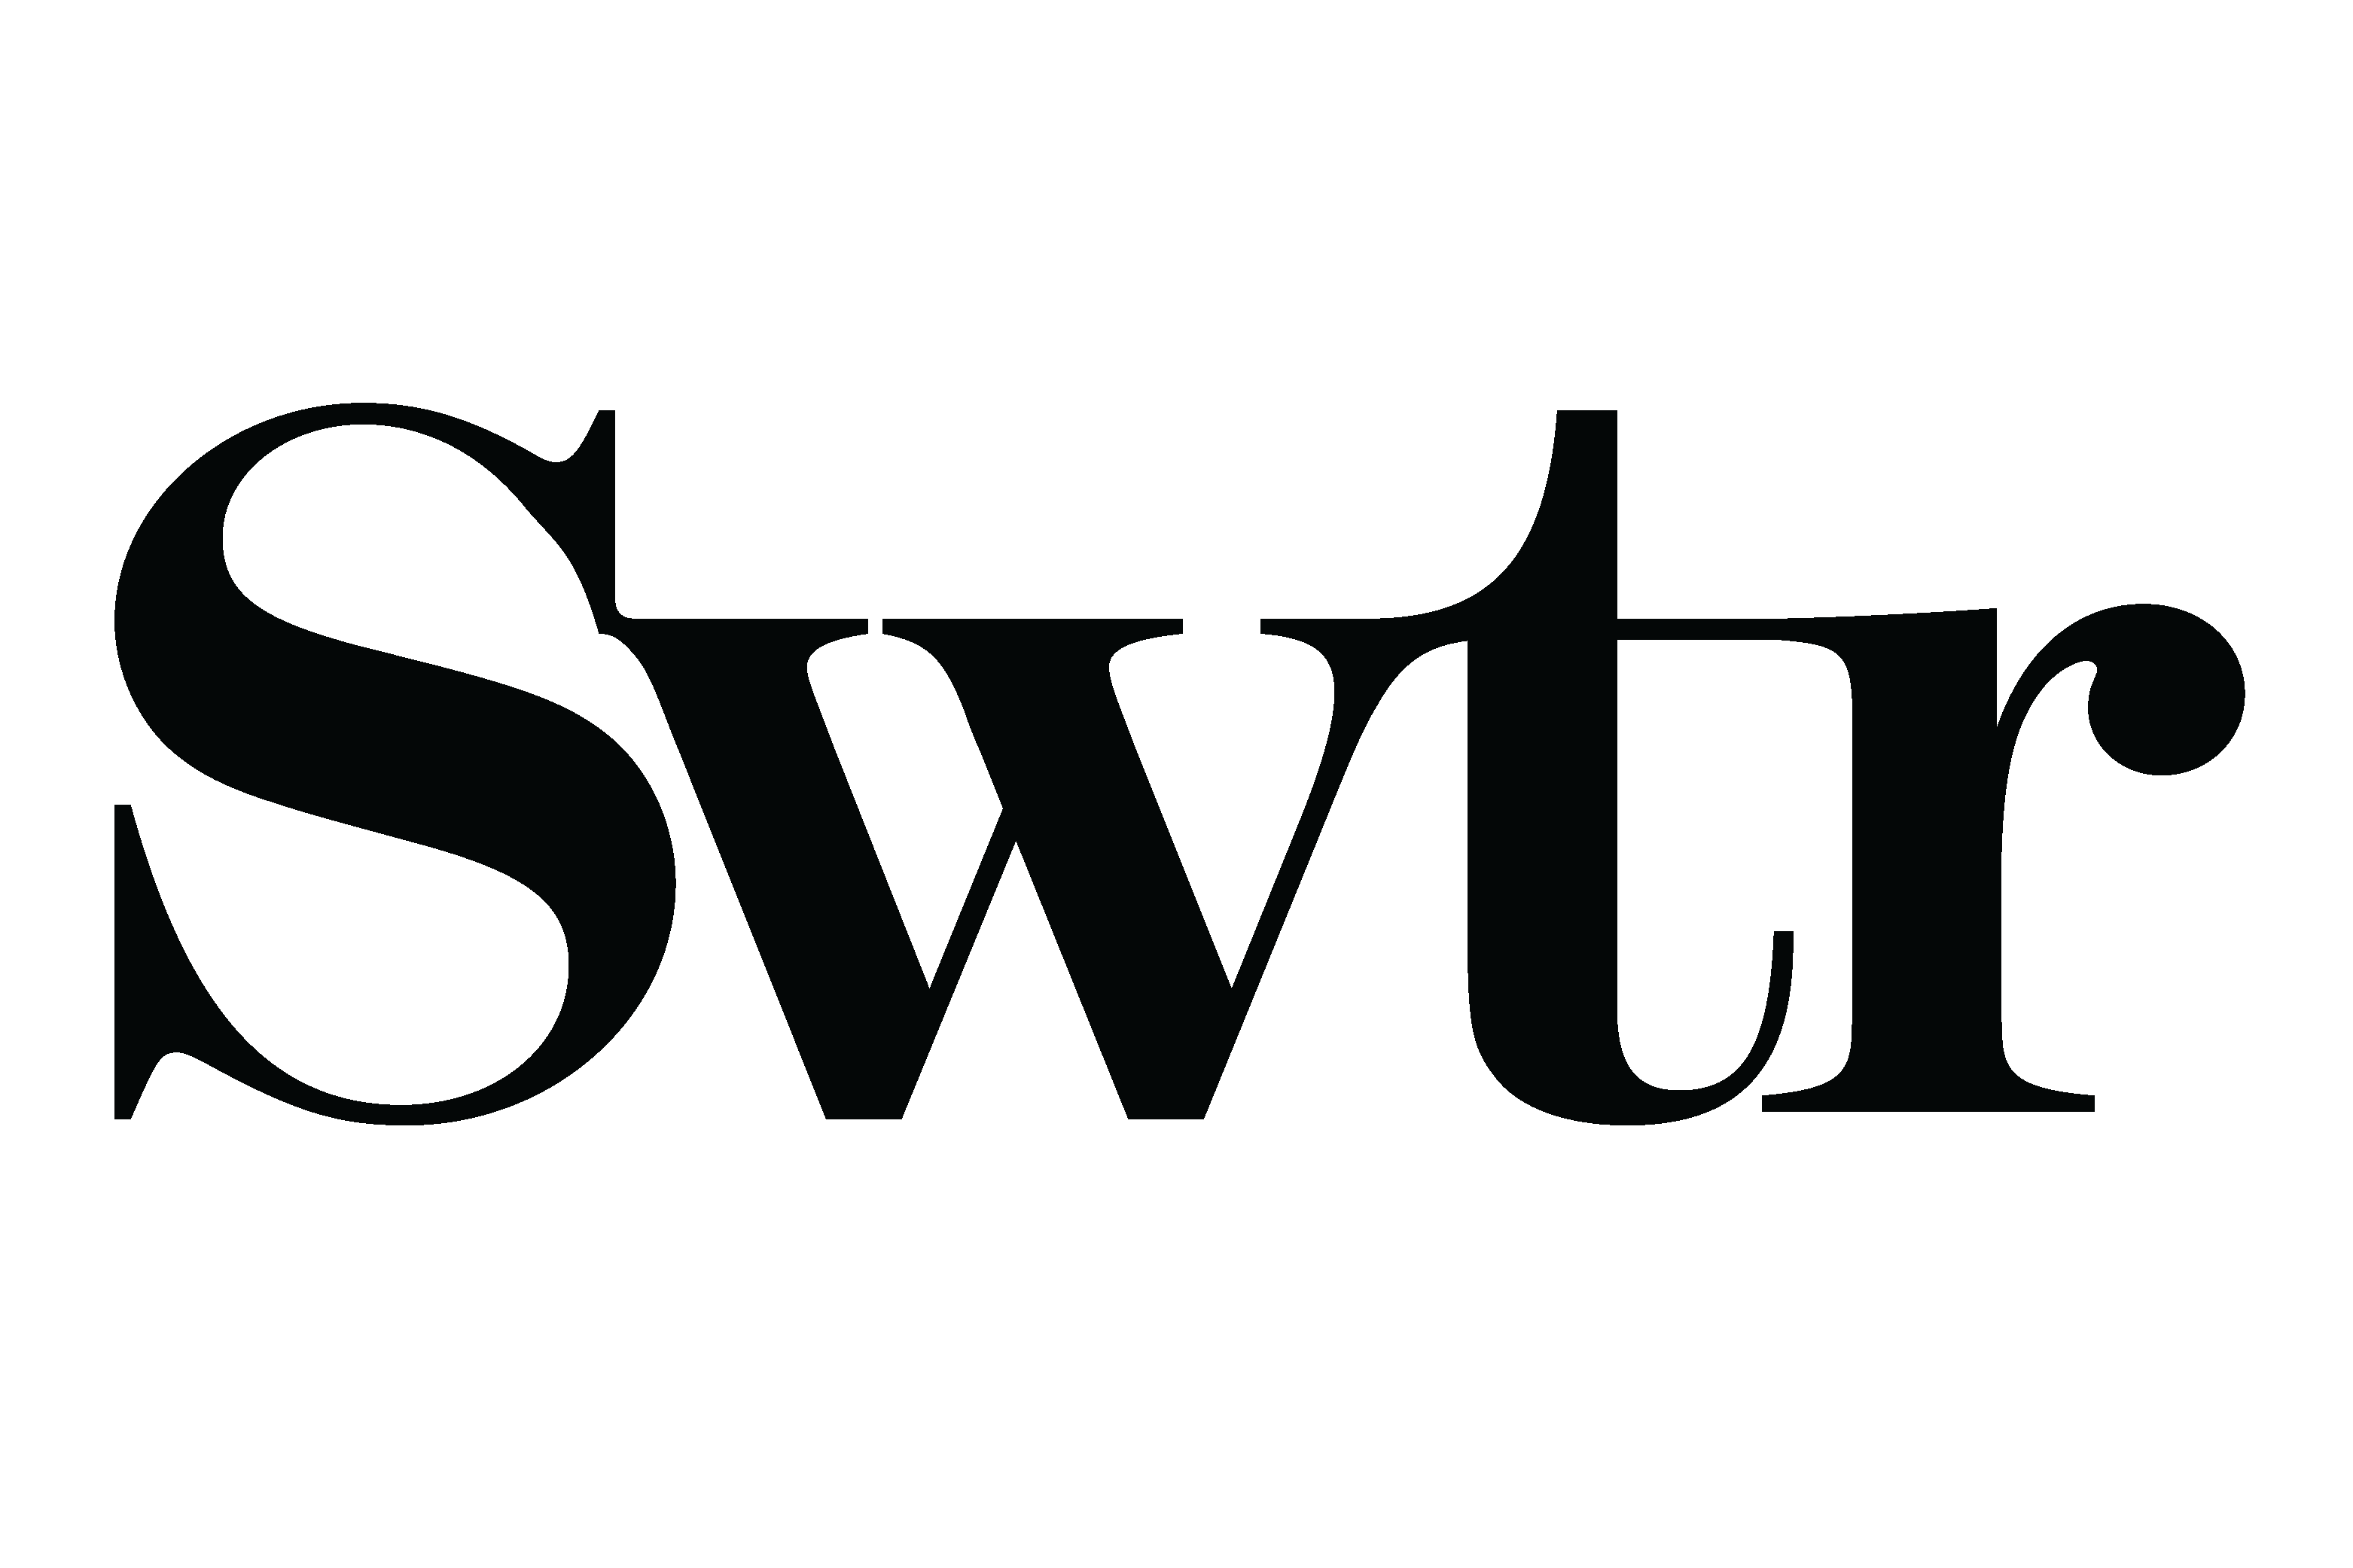 swtr logo